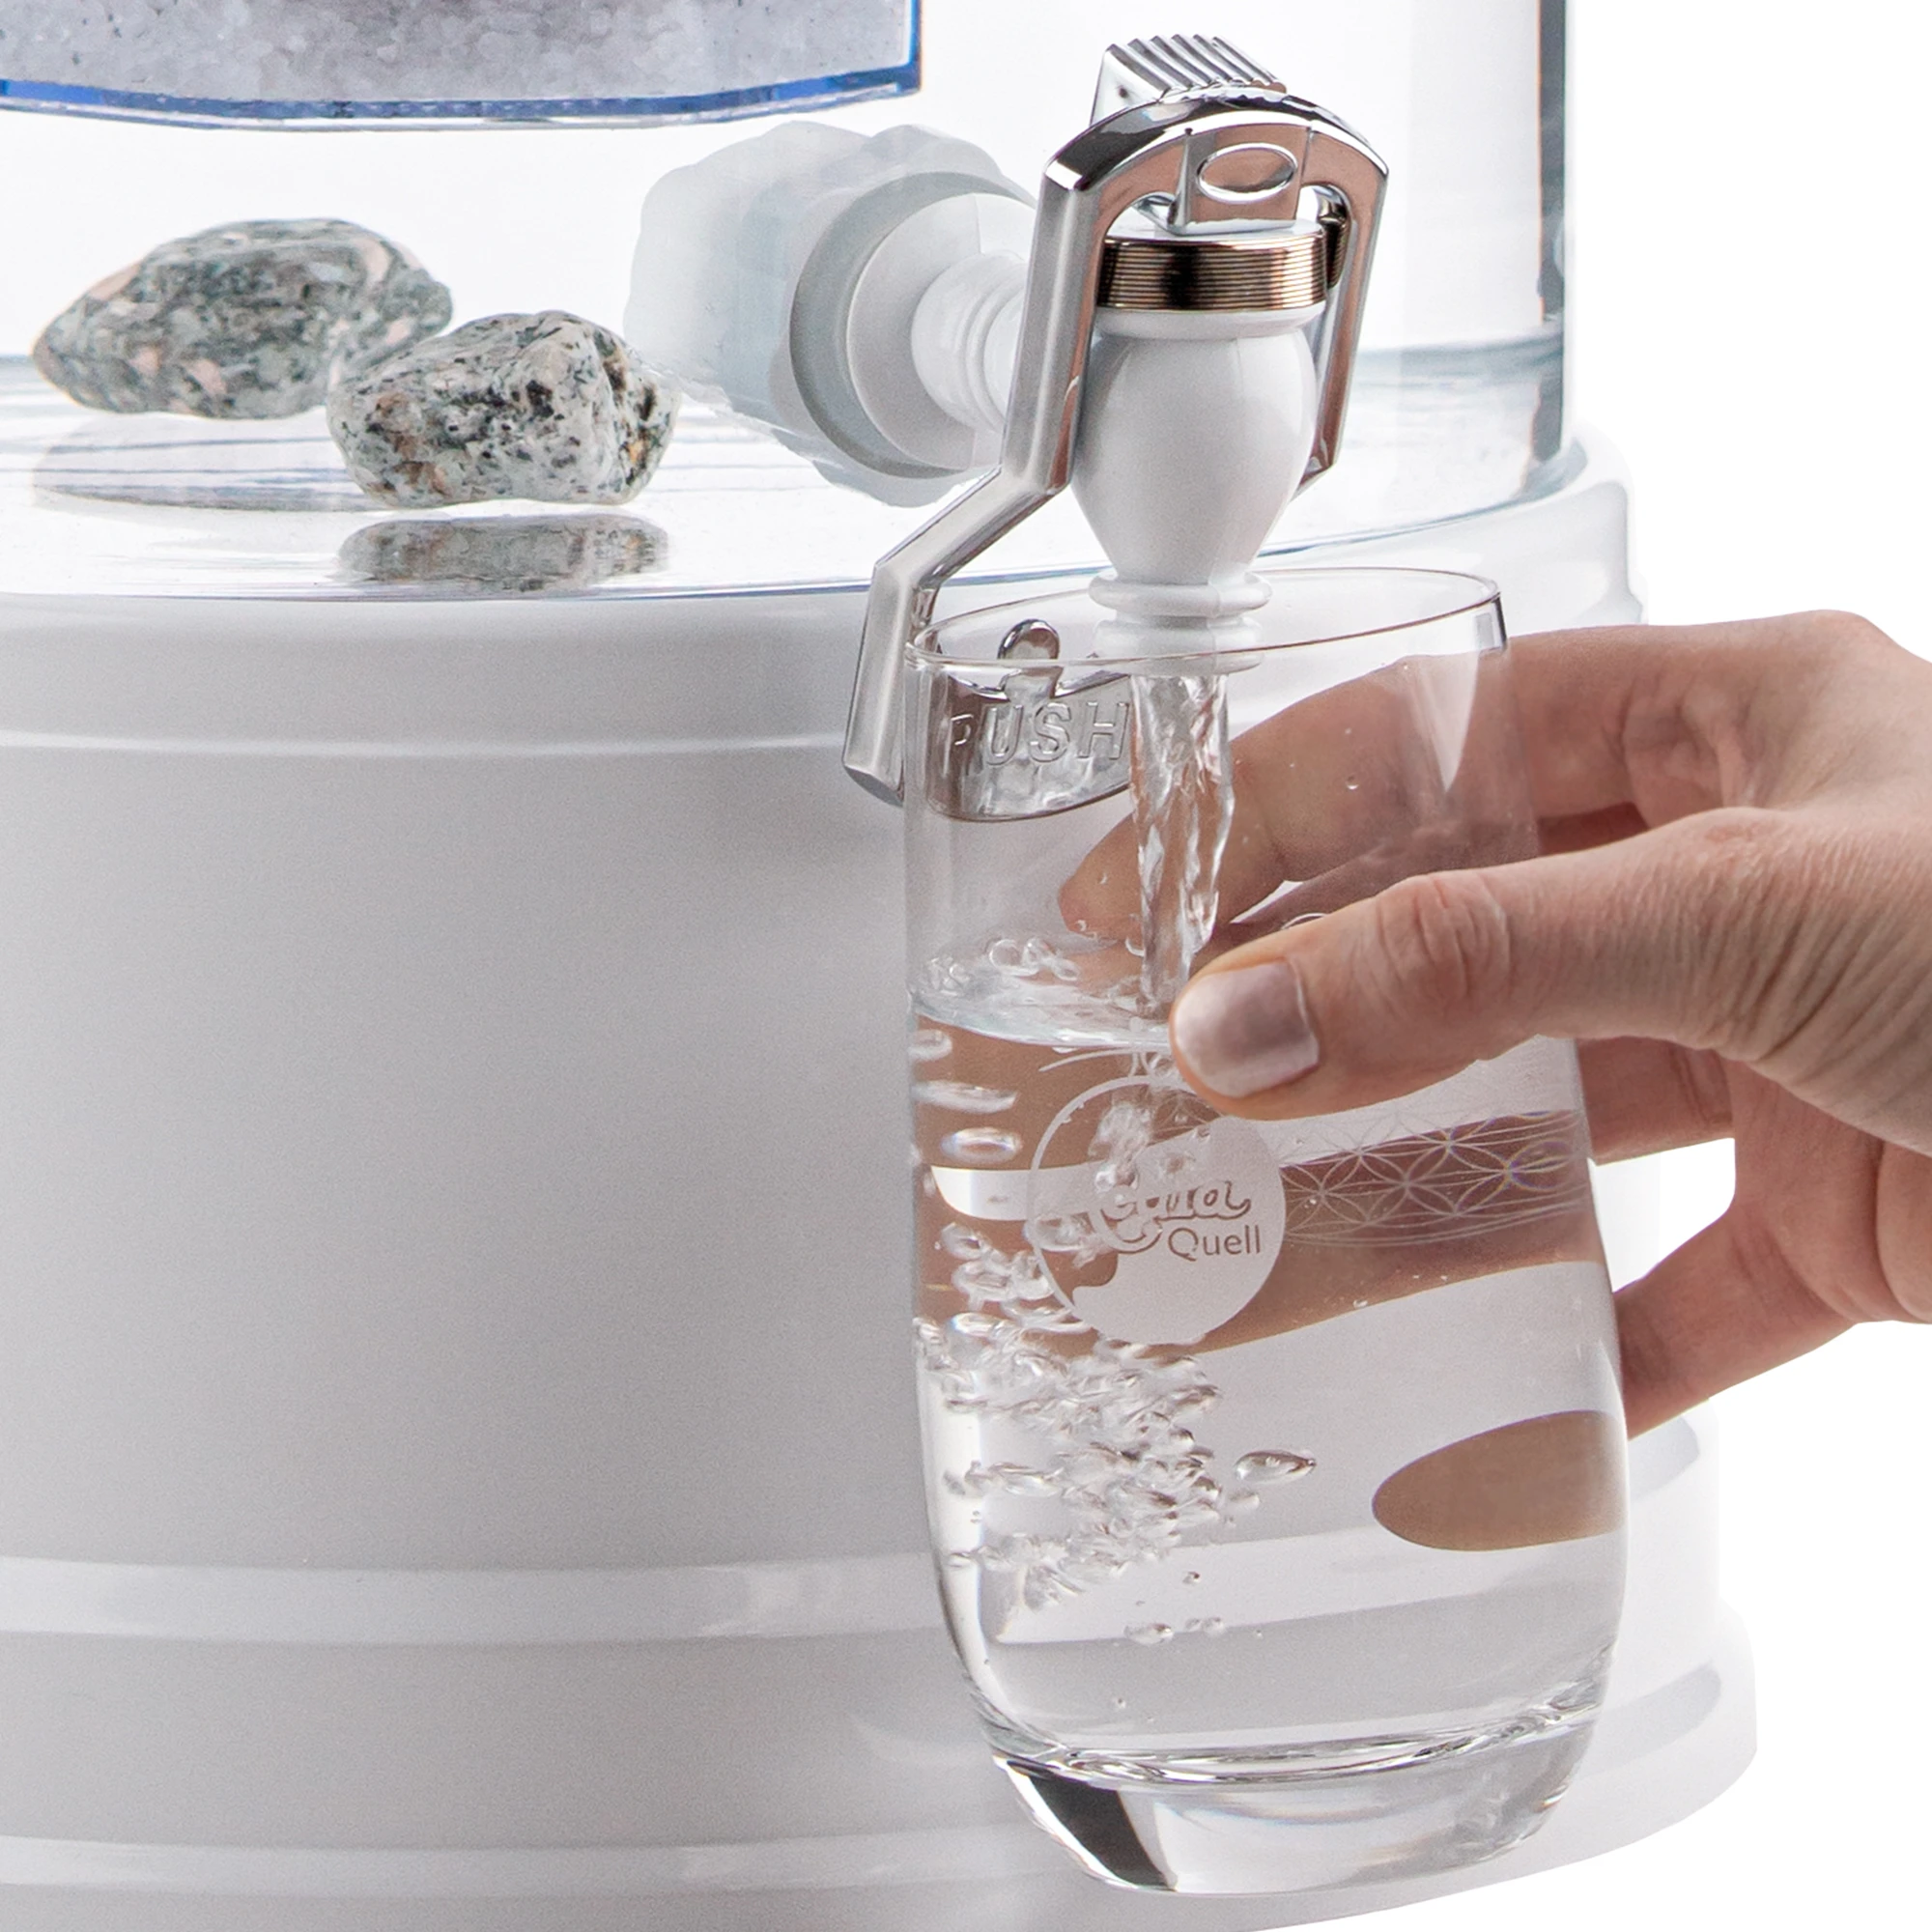 Zu sehen ist der Kunststoff Wasserhahn in weiß für Acala Stand Wasserfilter an einem Glastank in kristallklar montiert. Eine Hand drückt ein Glas gegen den silbernen Bügel, Wasser läuft in das Glas.